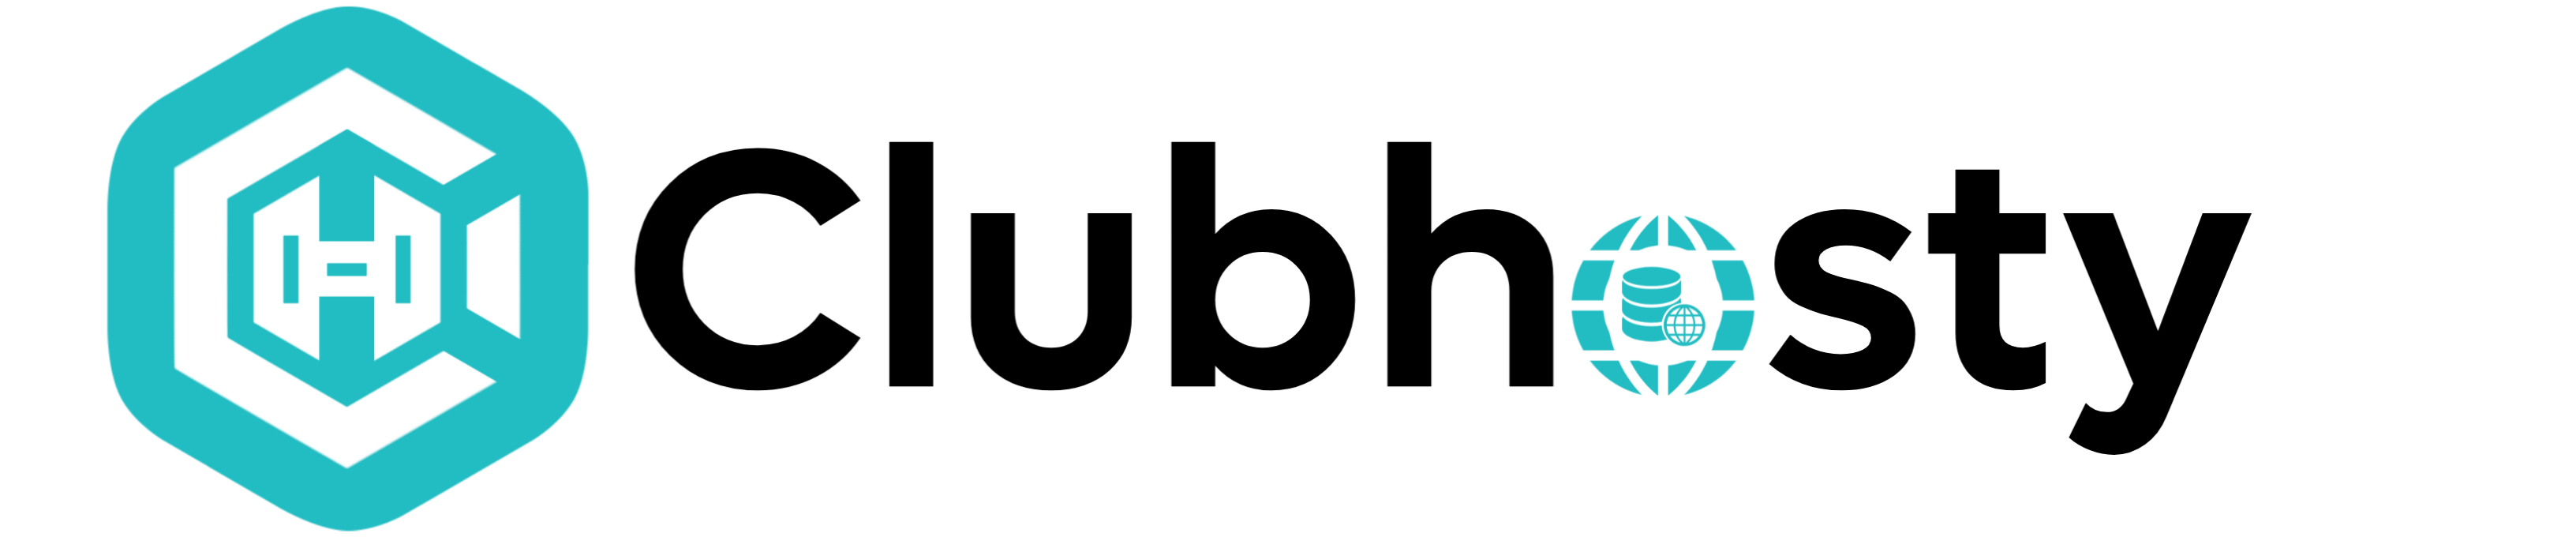 clubhosty-logo